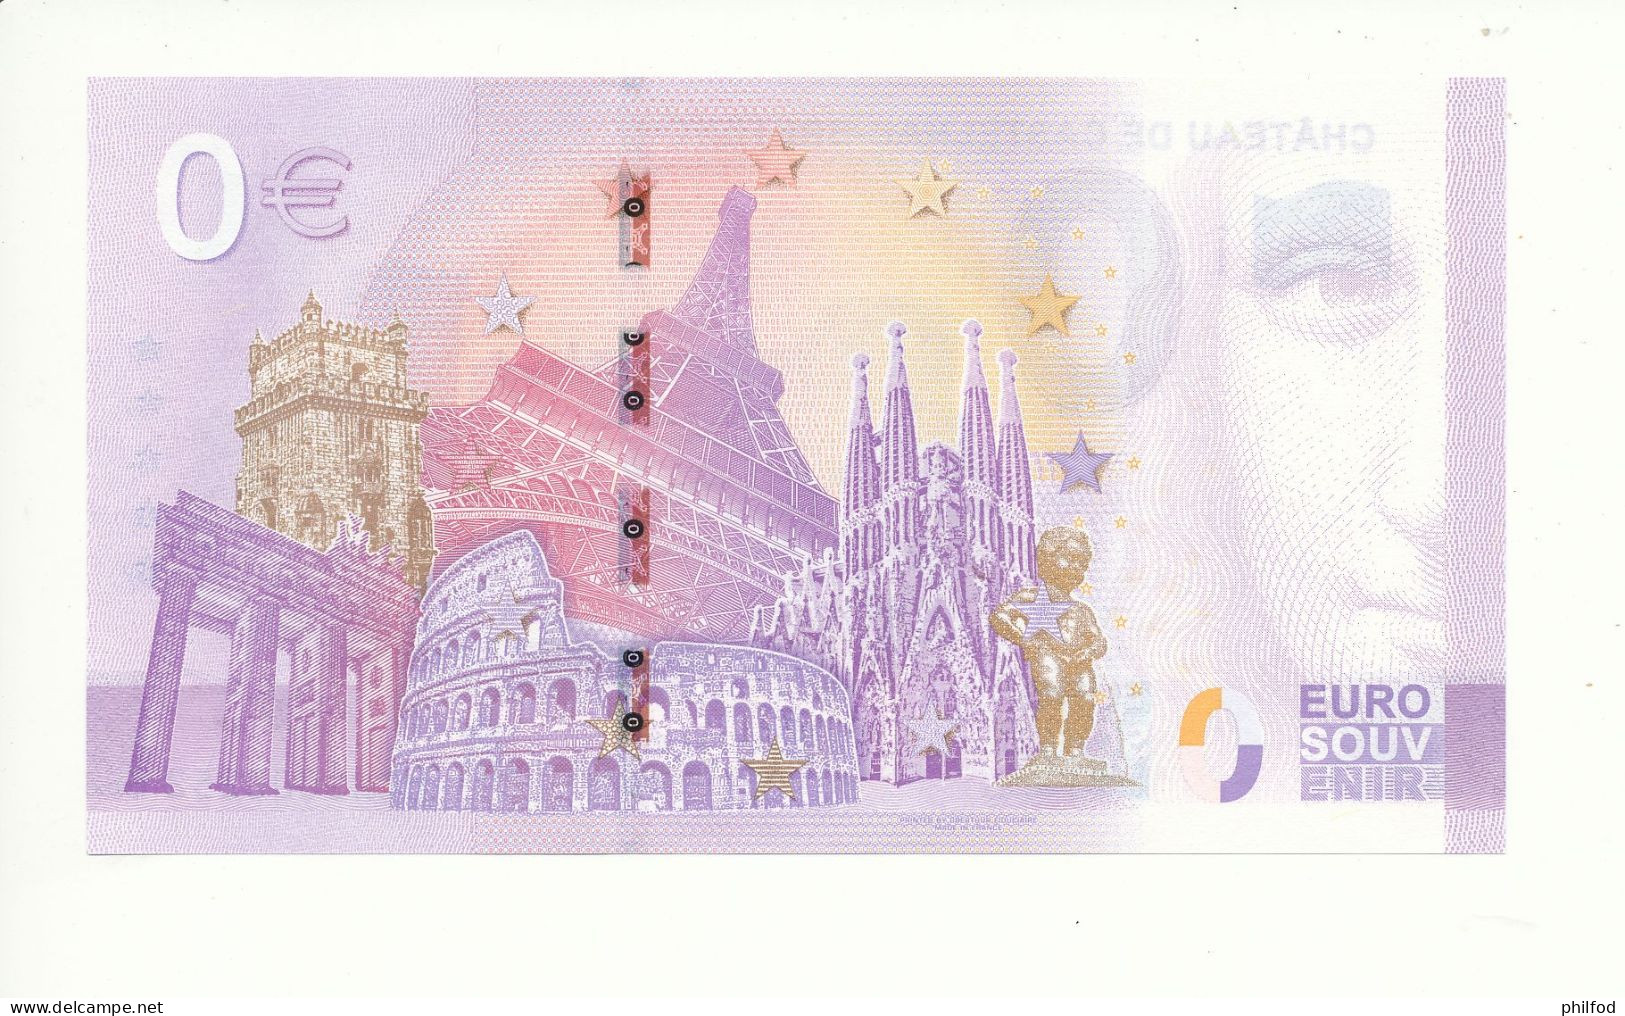 Billet Souvenir - 0 Euro - CHÂTEAU DE CASTELNAU-BRETENOUX - UEHS - 2023-1 - N° 252 - Lots & Kiloware - Banknotes